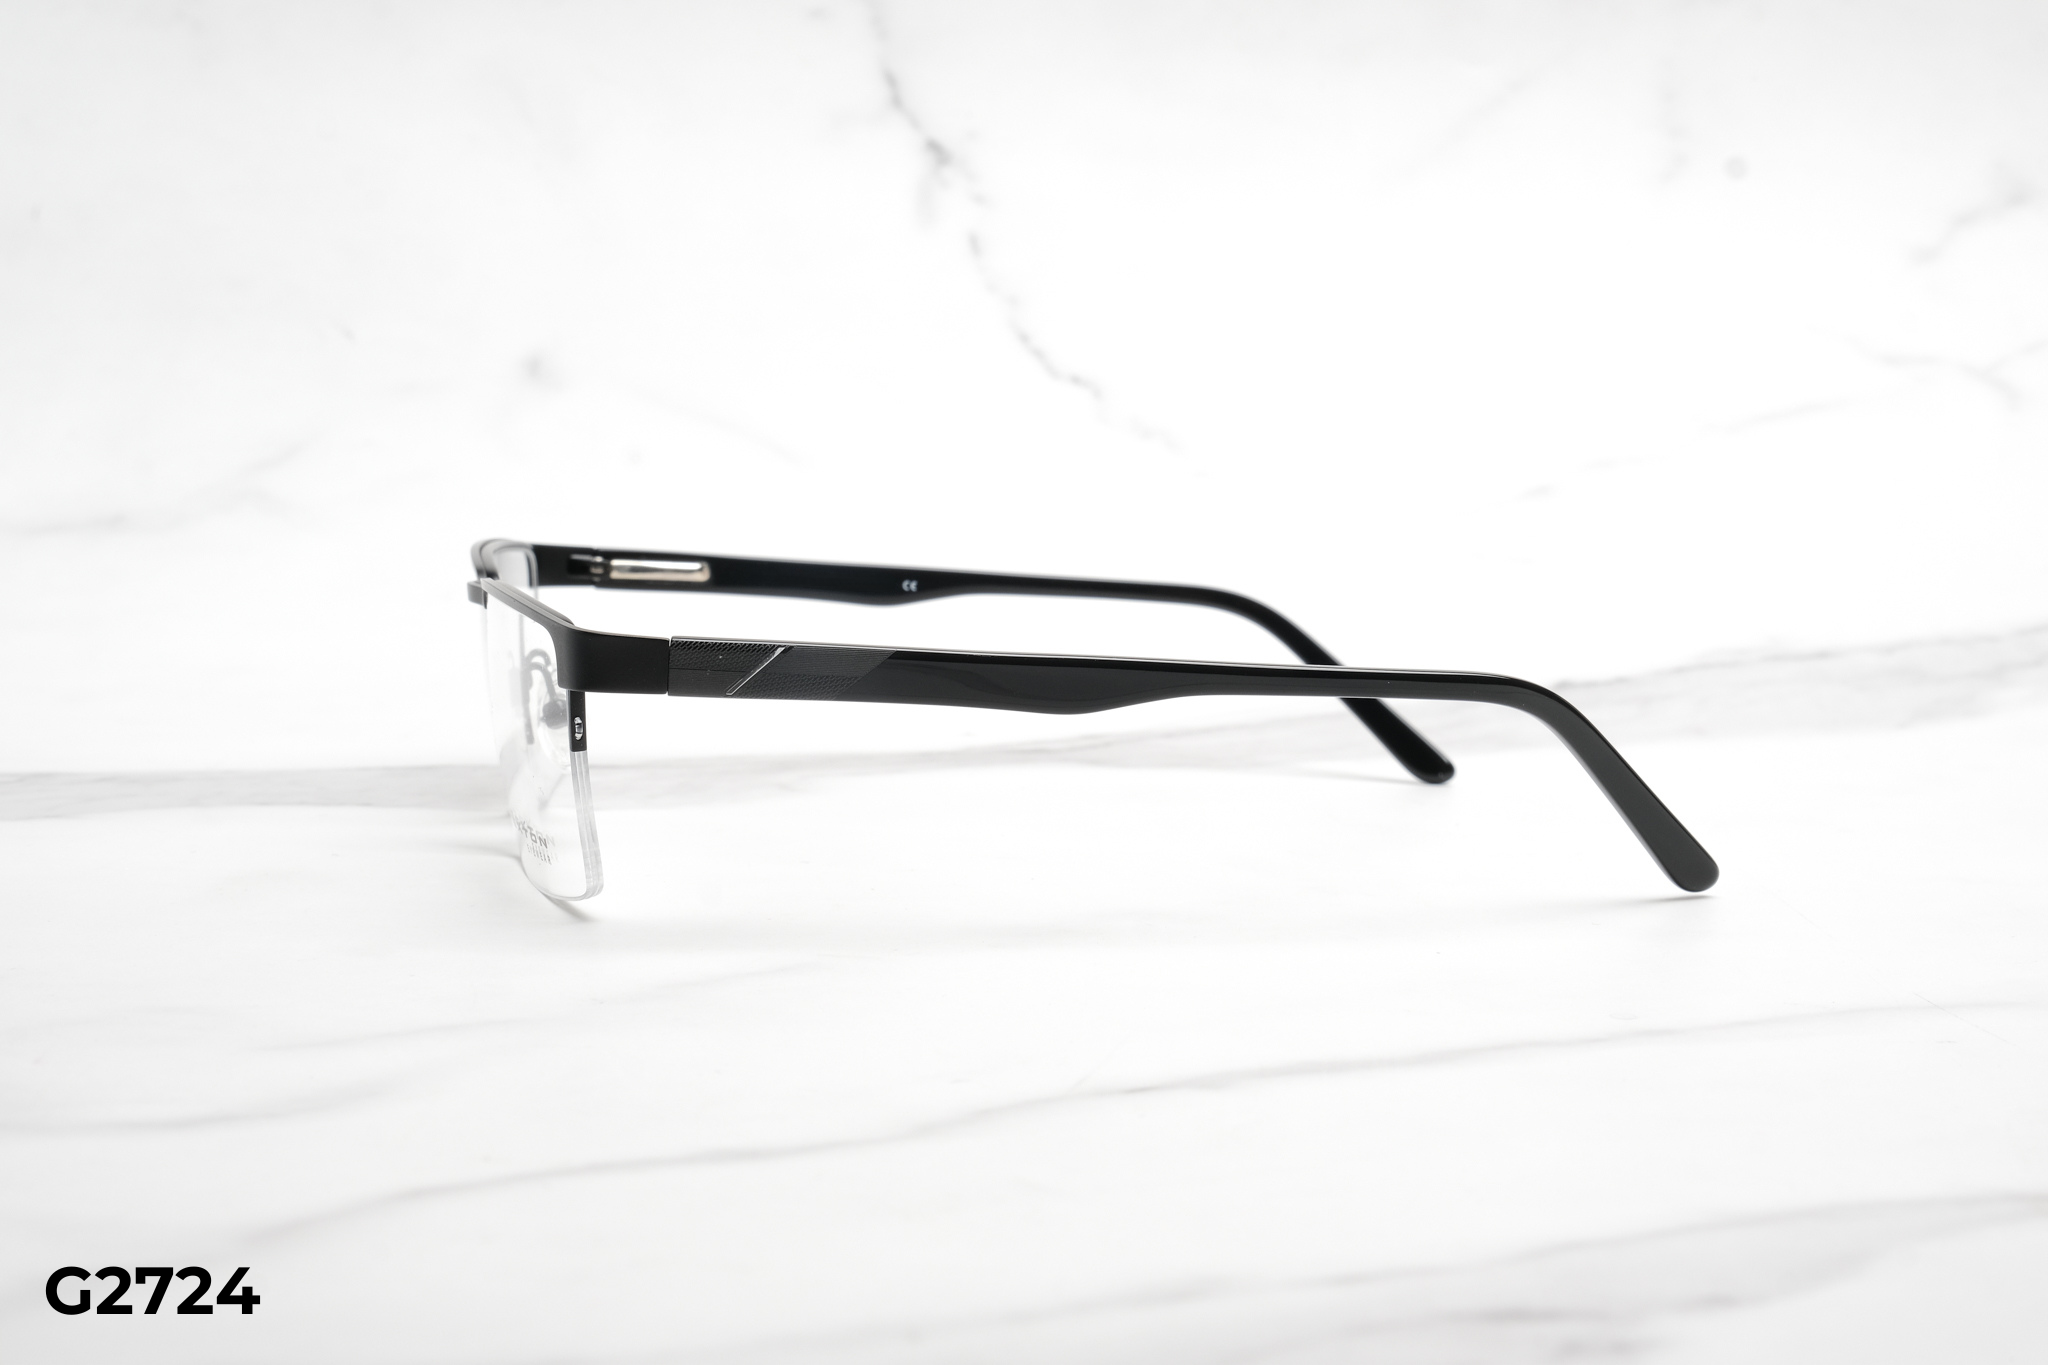  Rex-ton Eyewear - Glasses - G2724 